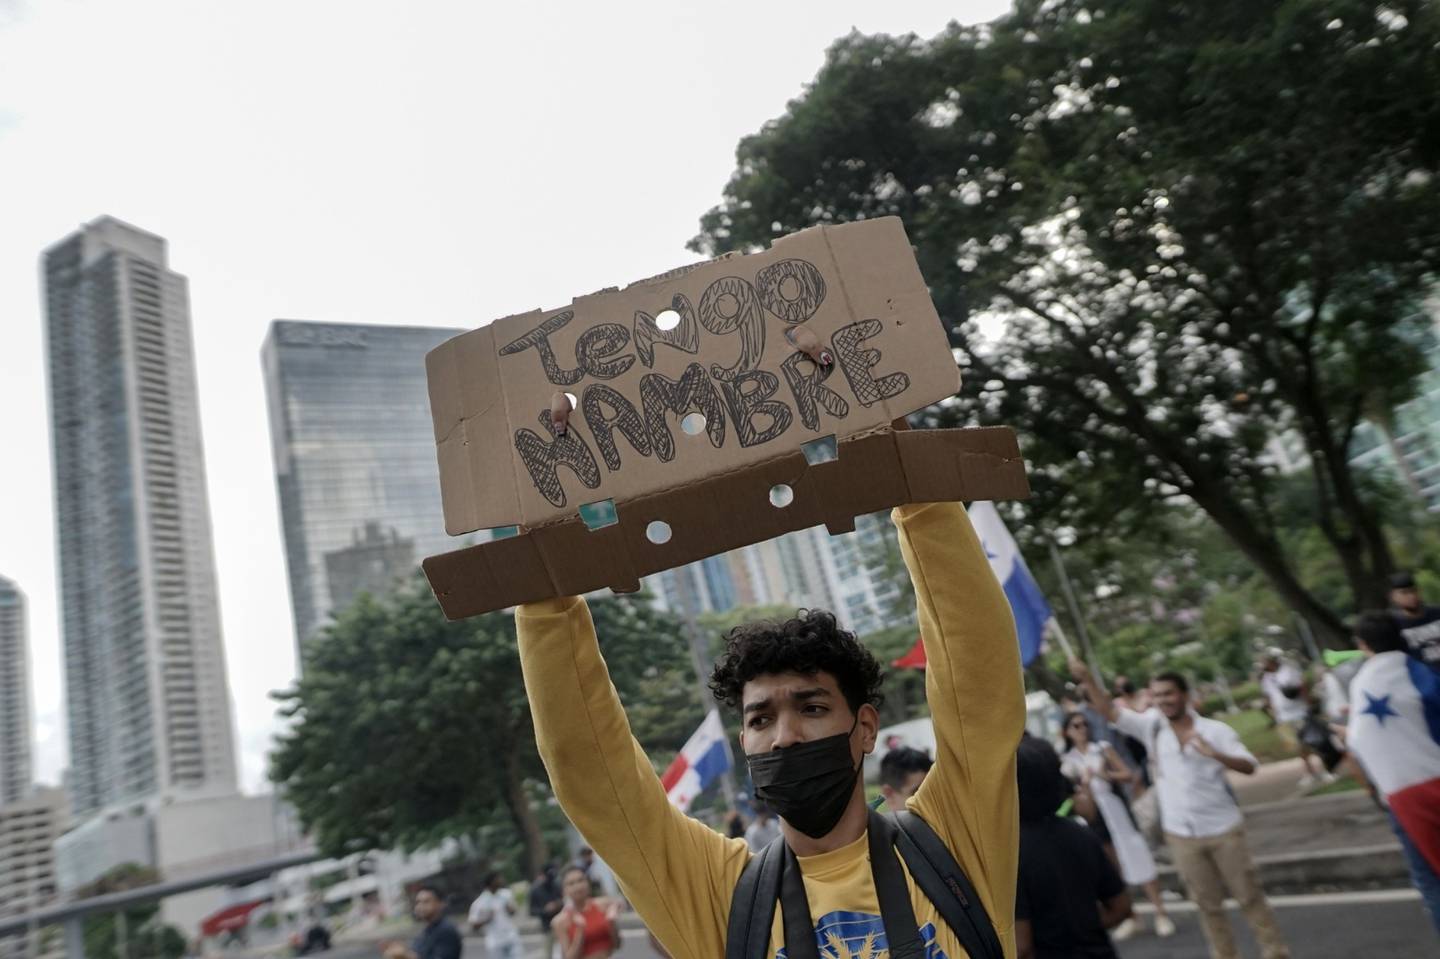 Un manifestante sostiene un cartel durante una protesta contra la inflación en Ciudad de Panamá, Panamá, el jueves 14 de julio de 2022. El gobierno de Panamá aceptó dialogar con los manifestantes después de que se extendieran las manifestaciones contra la inflación, bloqueando el acceso a carreteras y puertos.